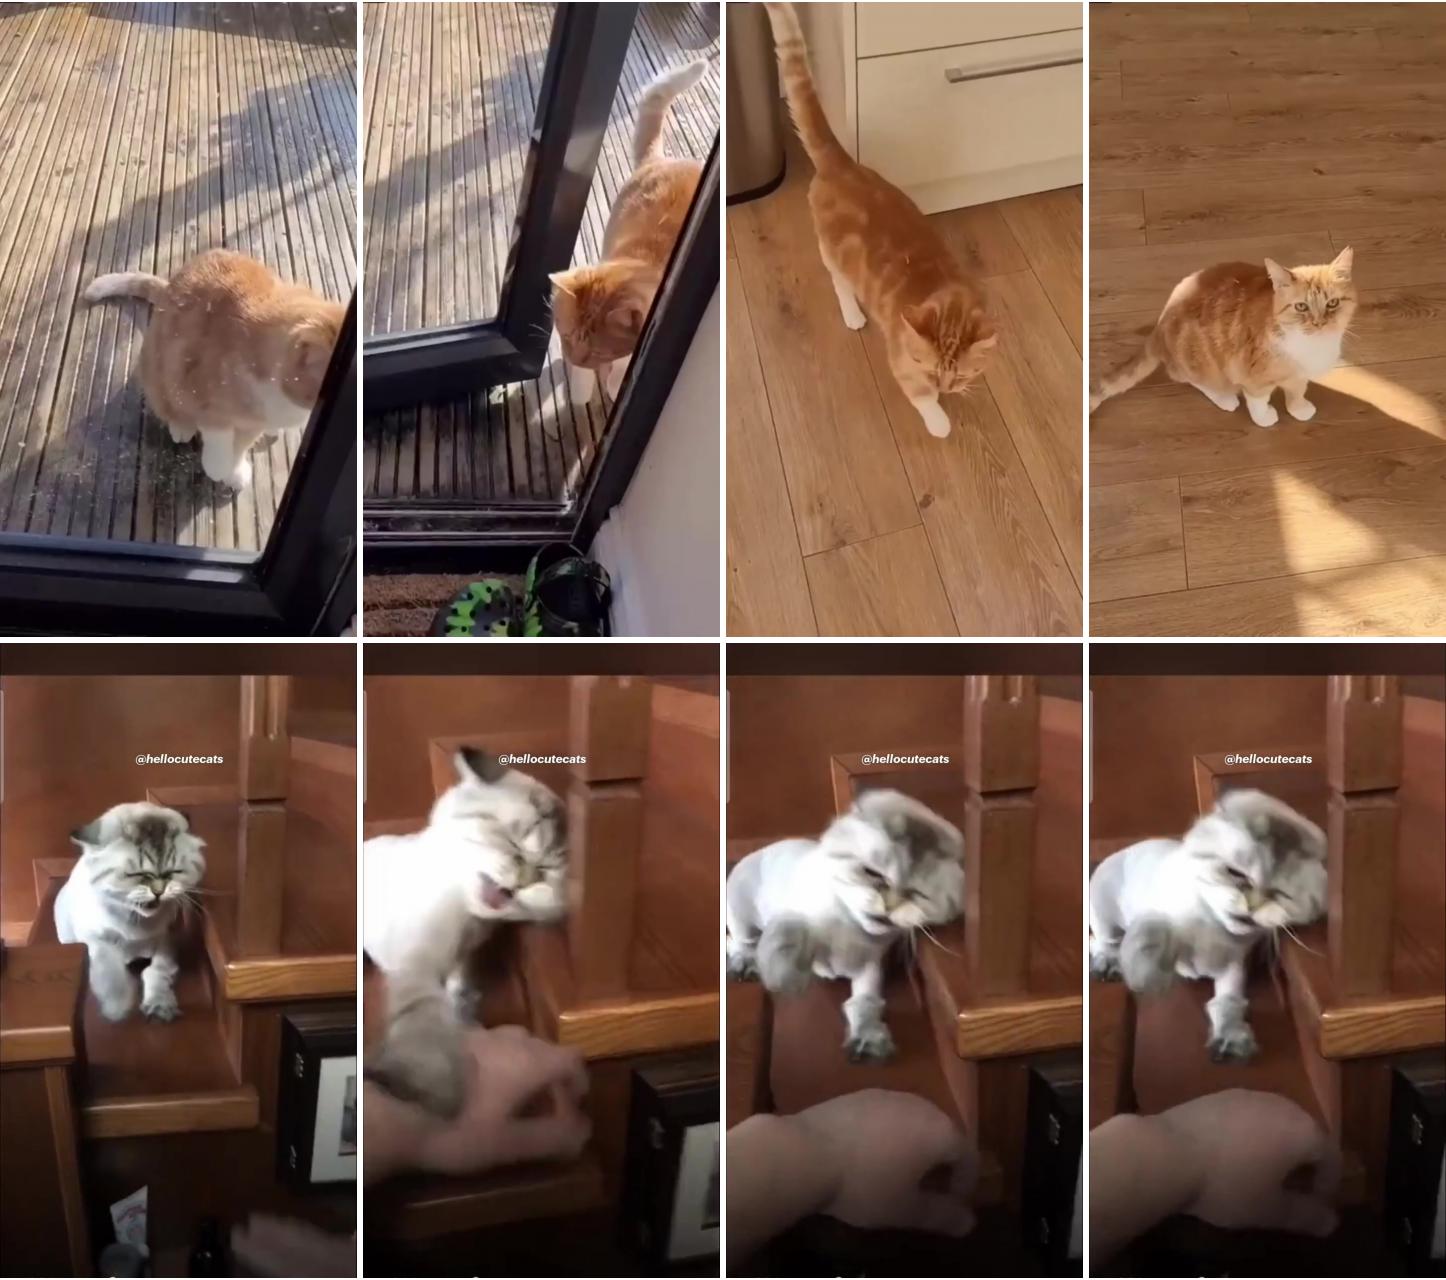 Funny cat, hellocutecats; social ads